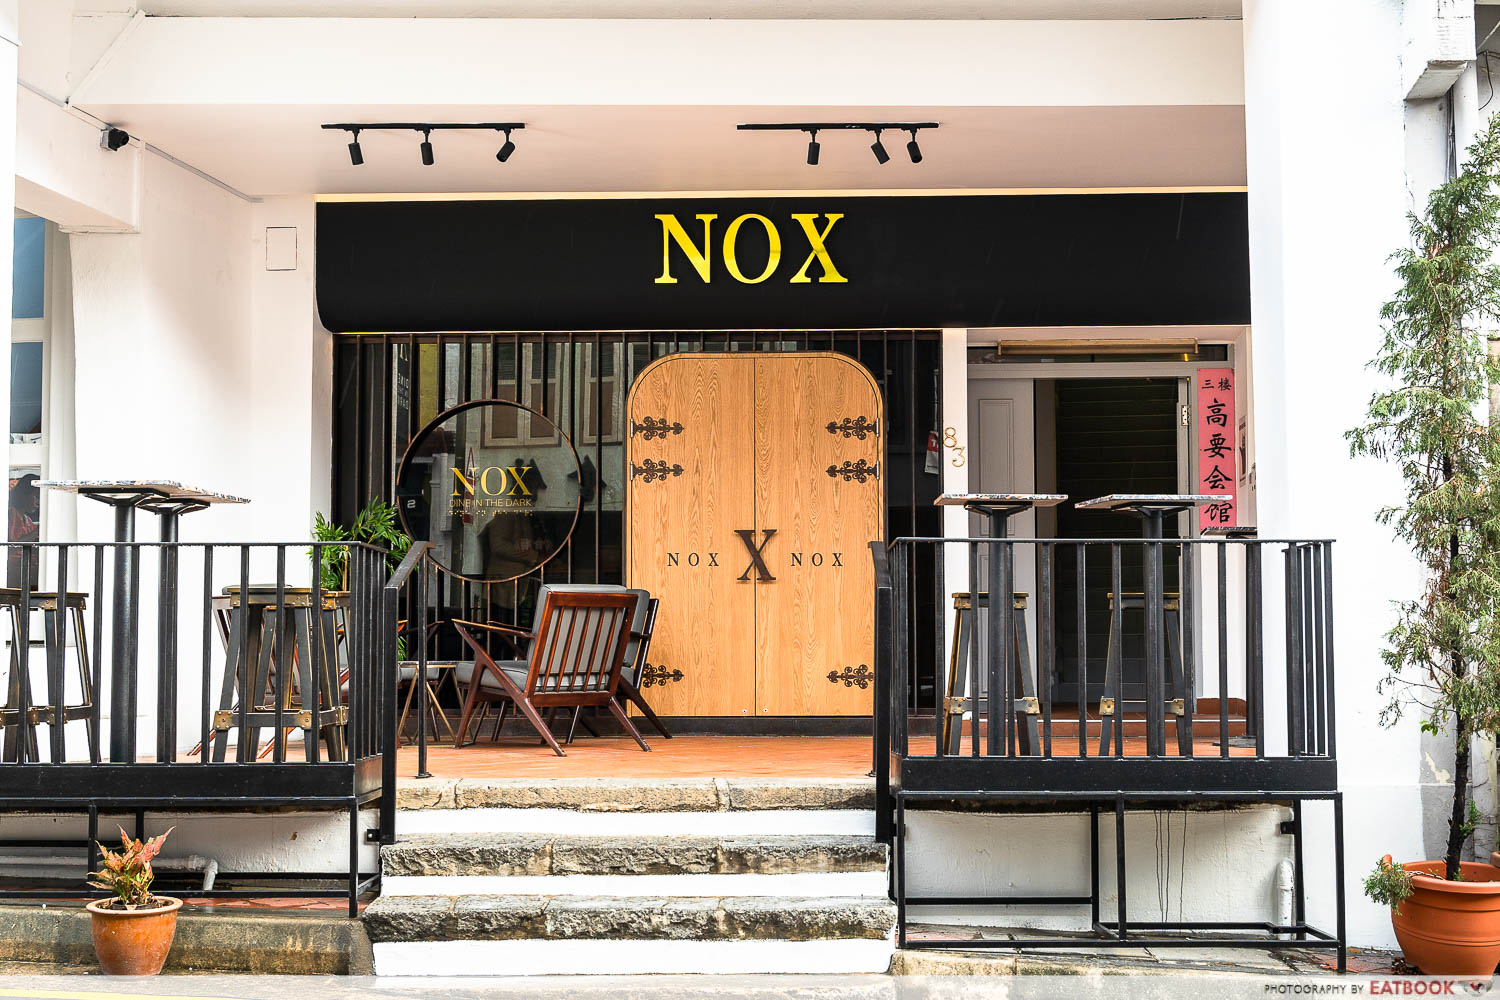 nox - storefront